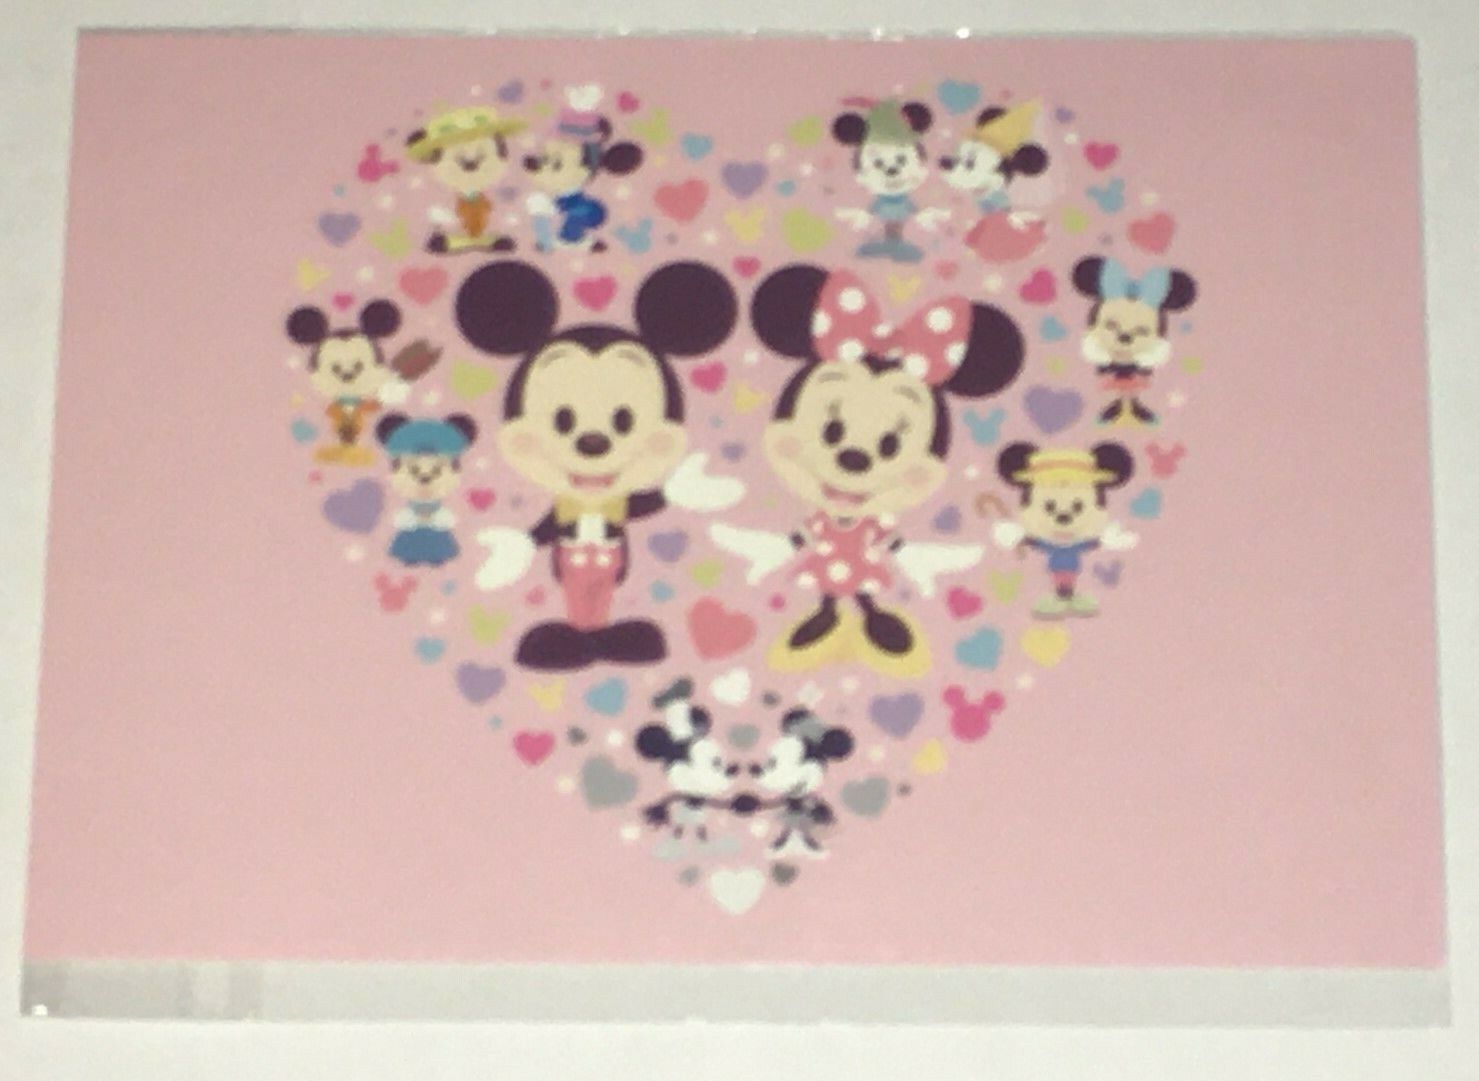 Disney WonderGround Gallery “Cutie Couple” Postcard 5X7 By Jerrod Maruyama NEW